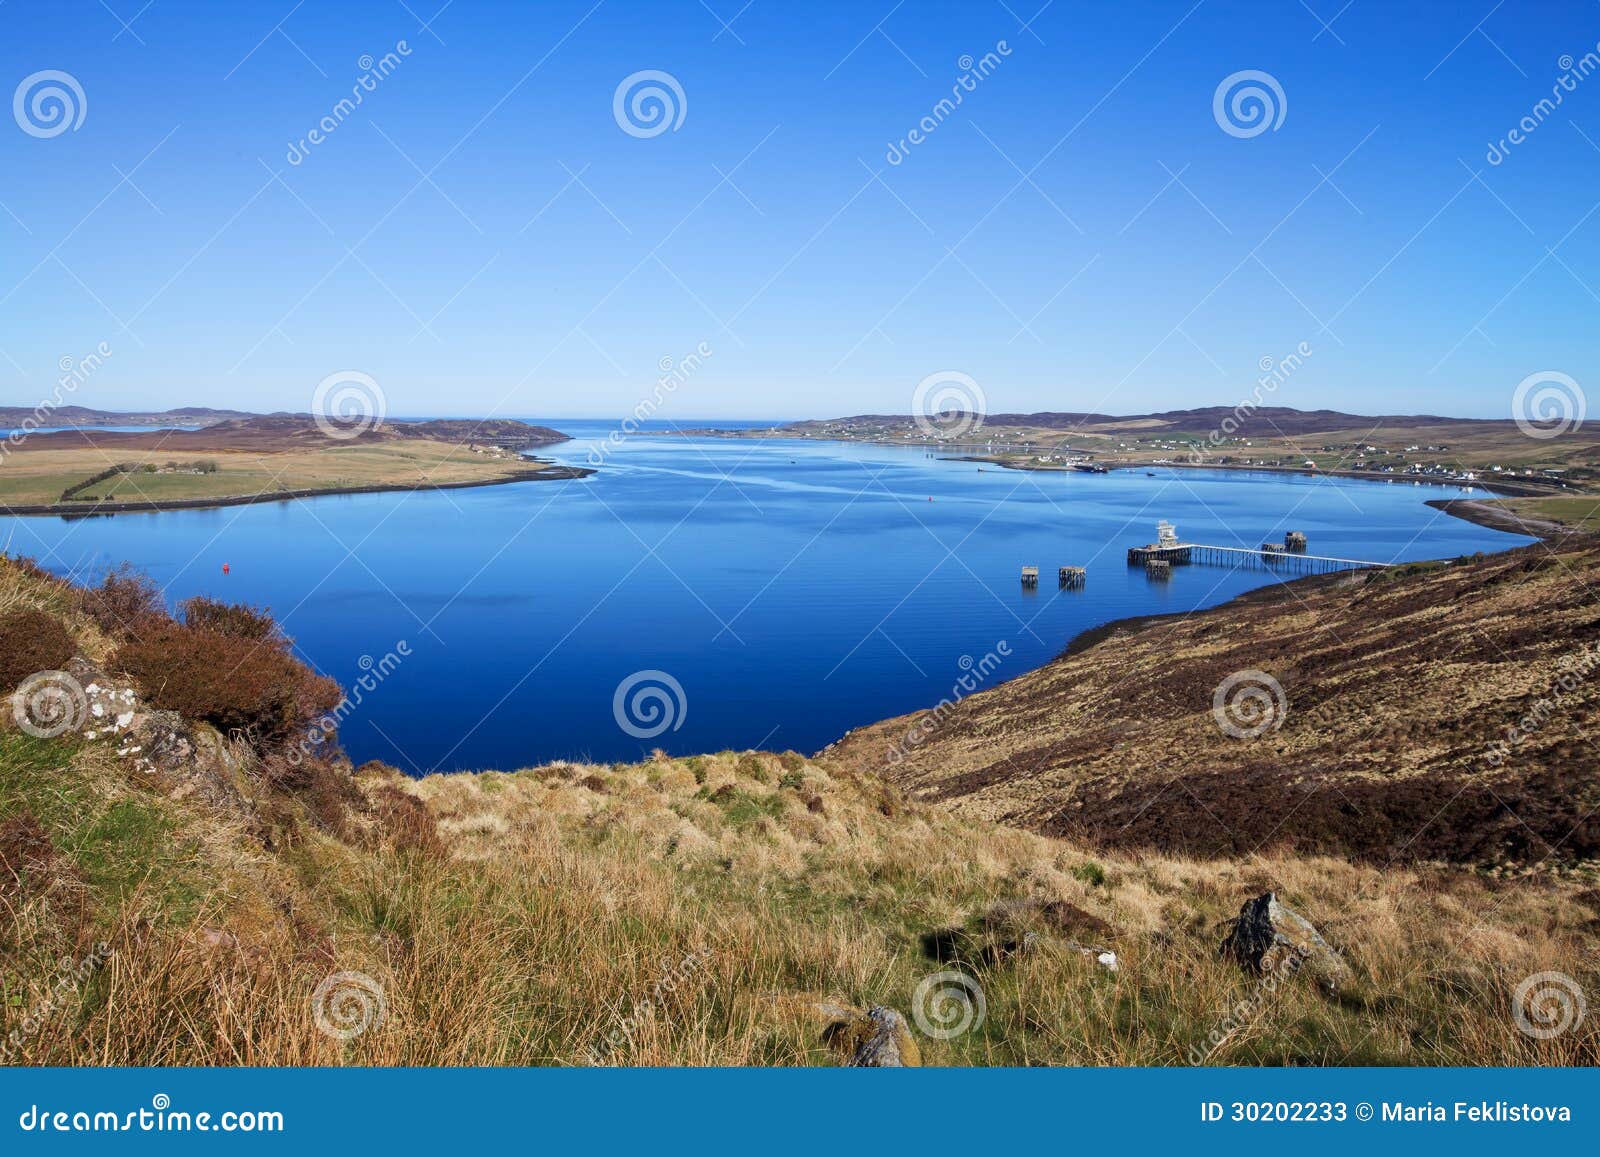 loch ewe bay, scotland